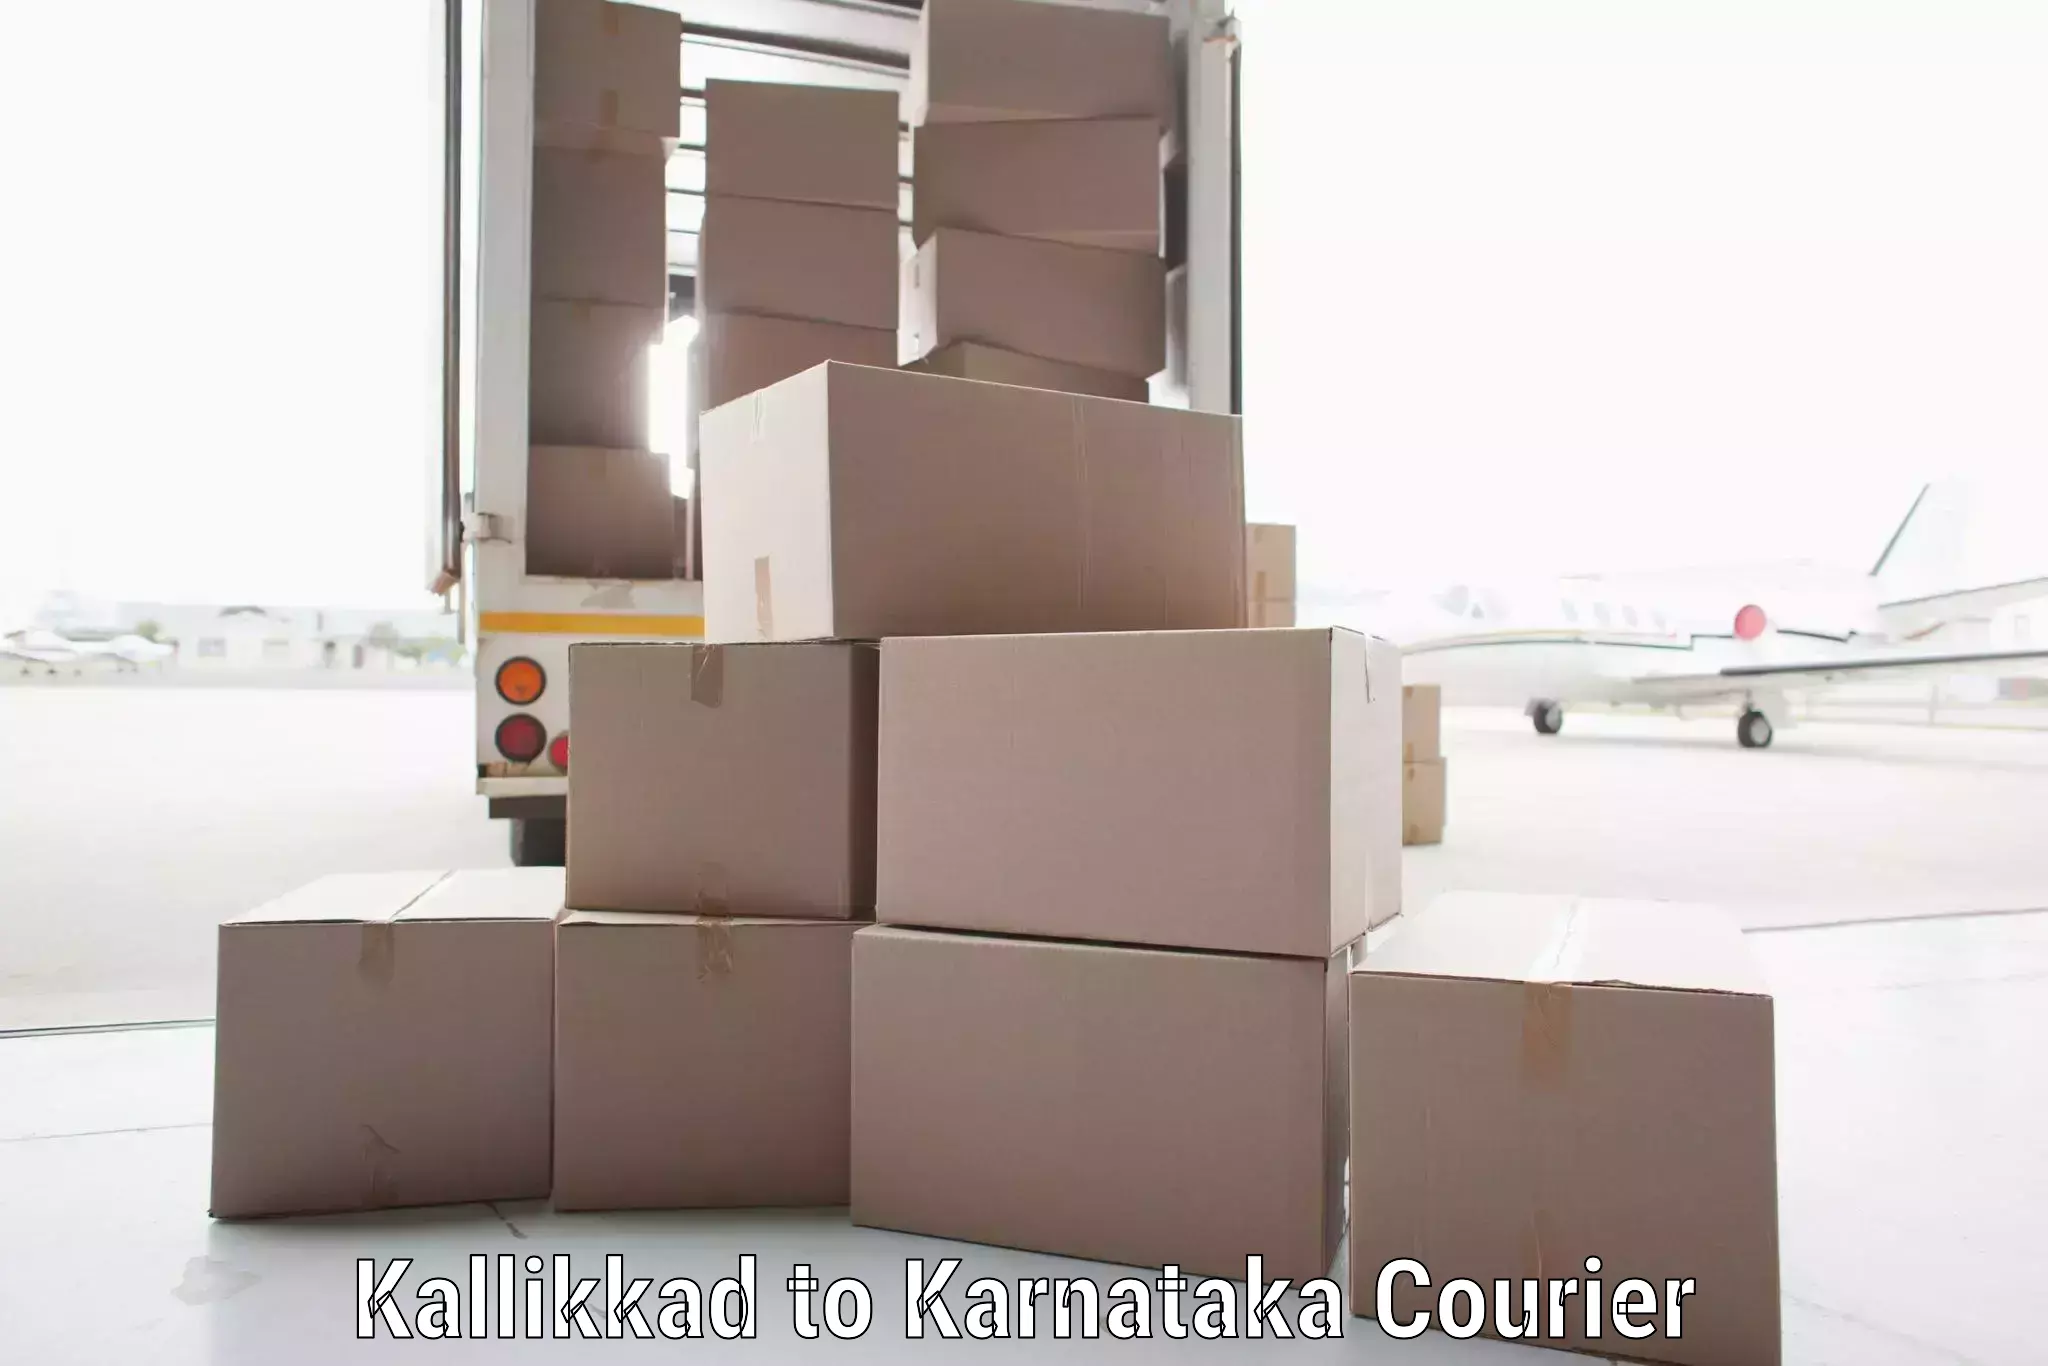 Optimized delivery routes Kallikkad to Karnataka